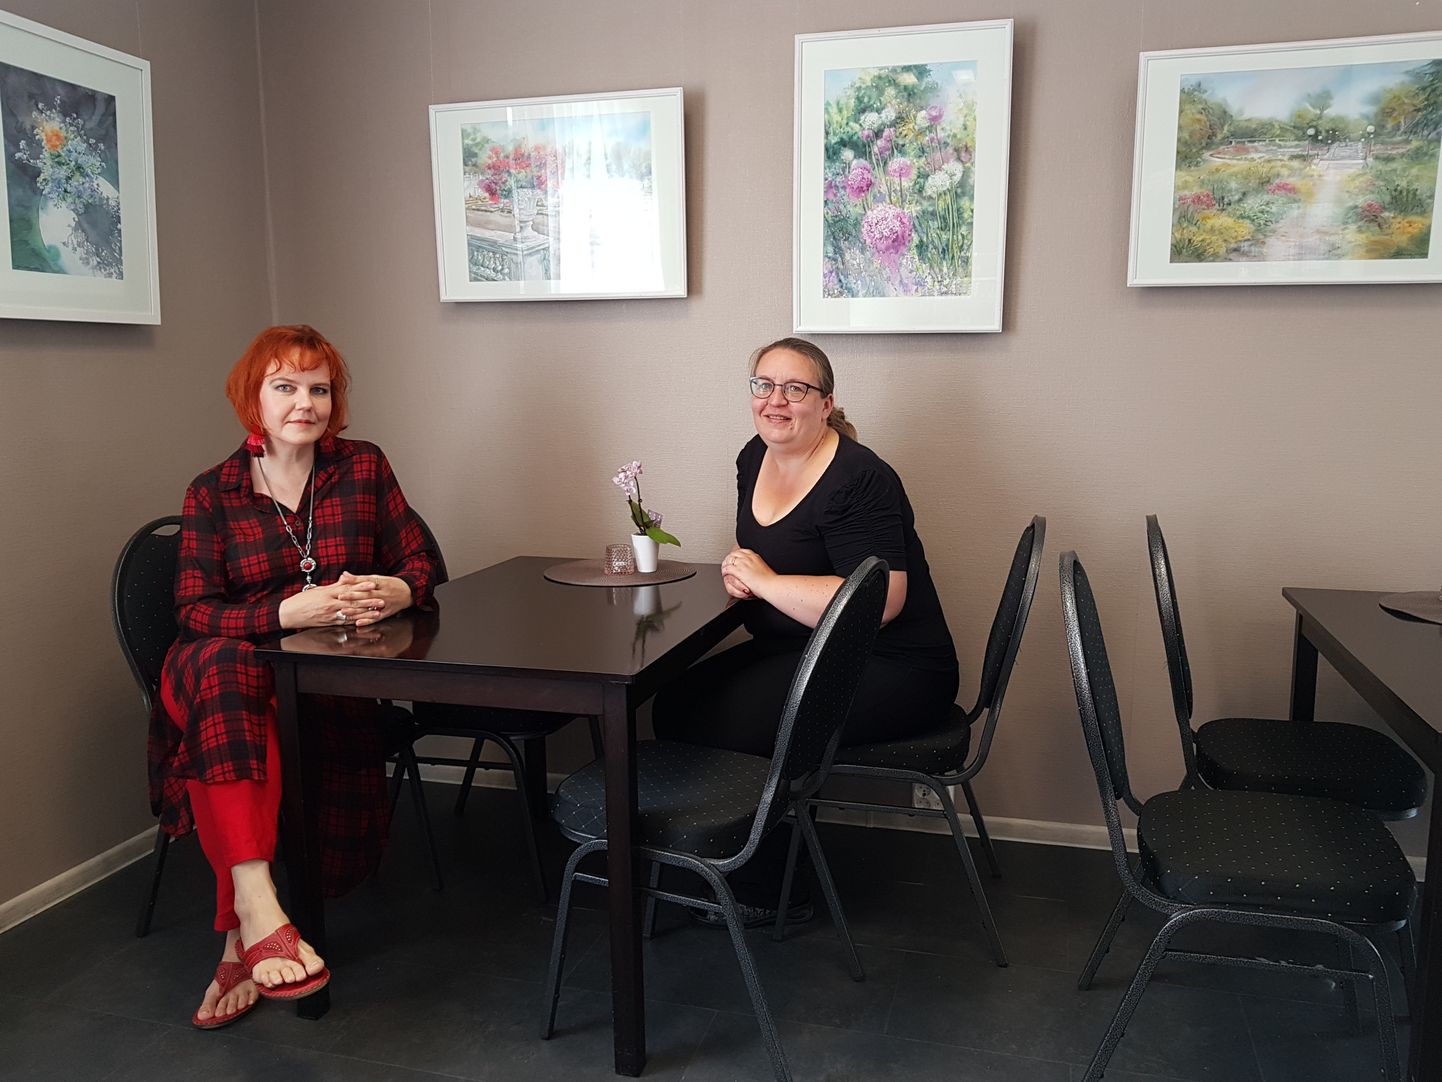 Kunstnik Ülle Kuldkepp ja Luise kohviku omanik Annika Vellamäe tunnevad suvistest piltidest kohviku seintel siirast rõõmu.